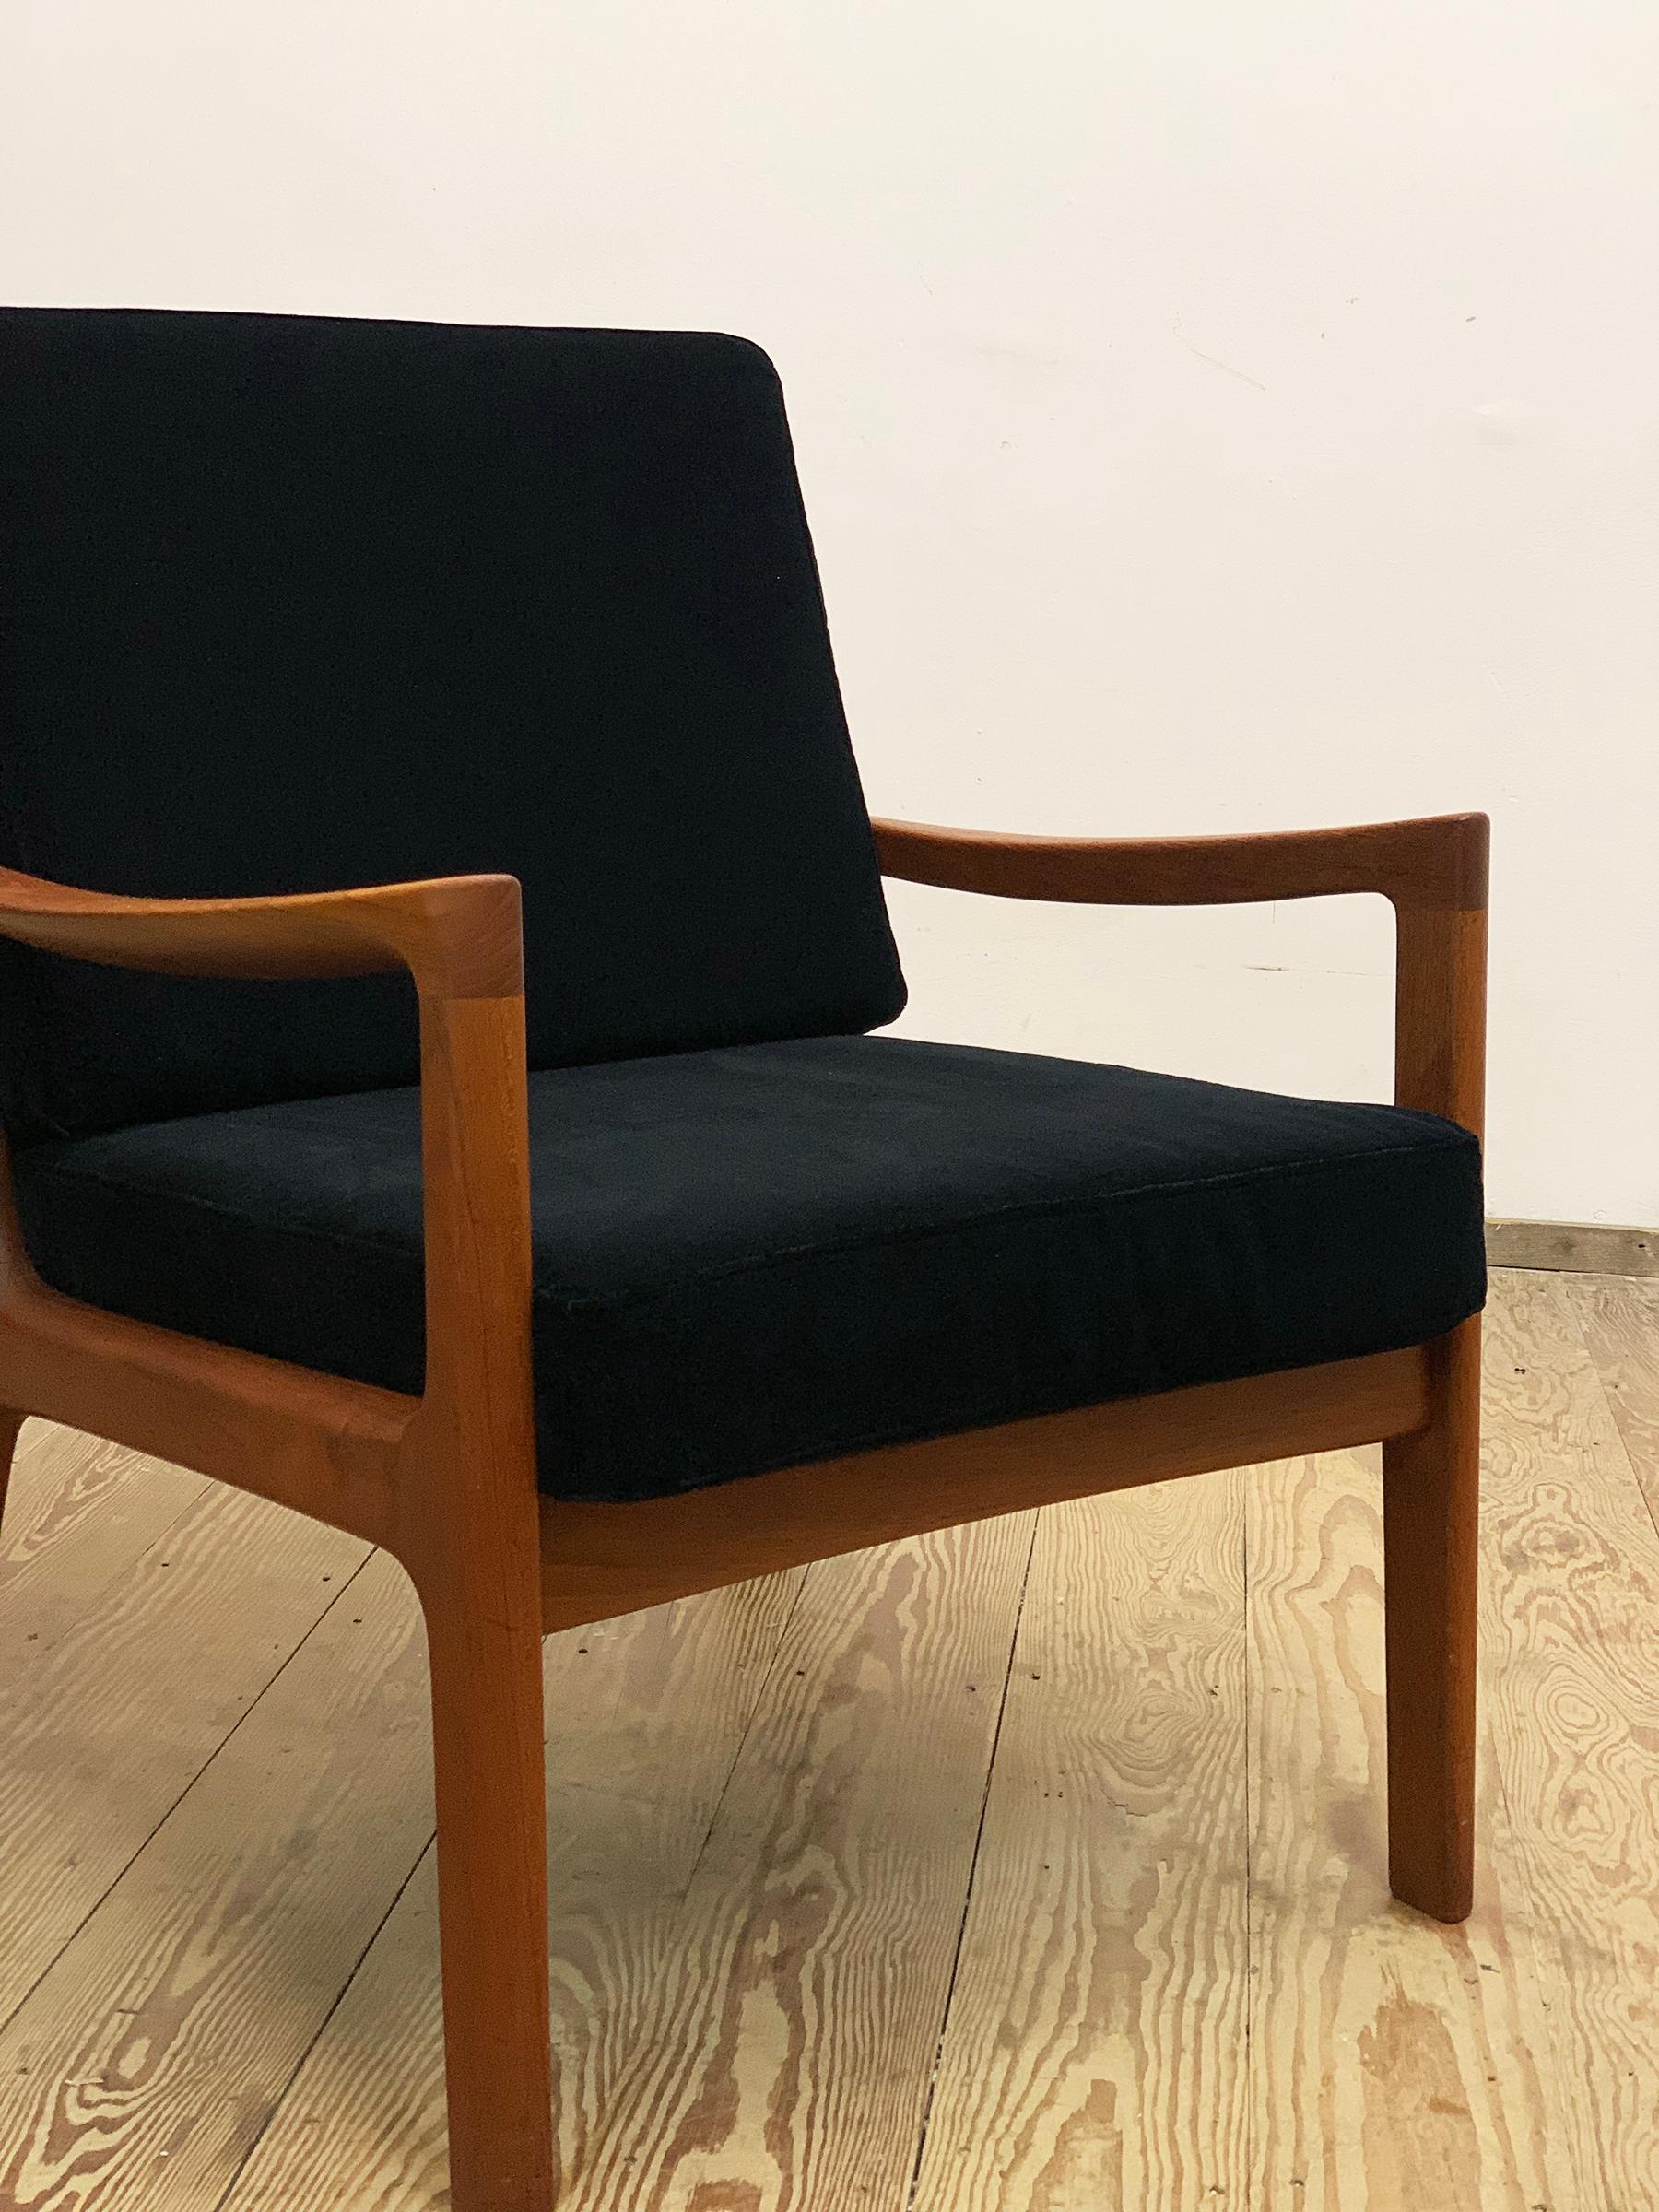 Mid-20th Century Mid-Century Design Teak Armchair, Ole Wanscher for France & Søn, Denmark, 1950s For Sale